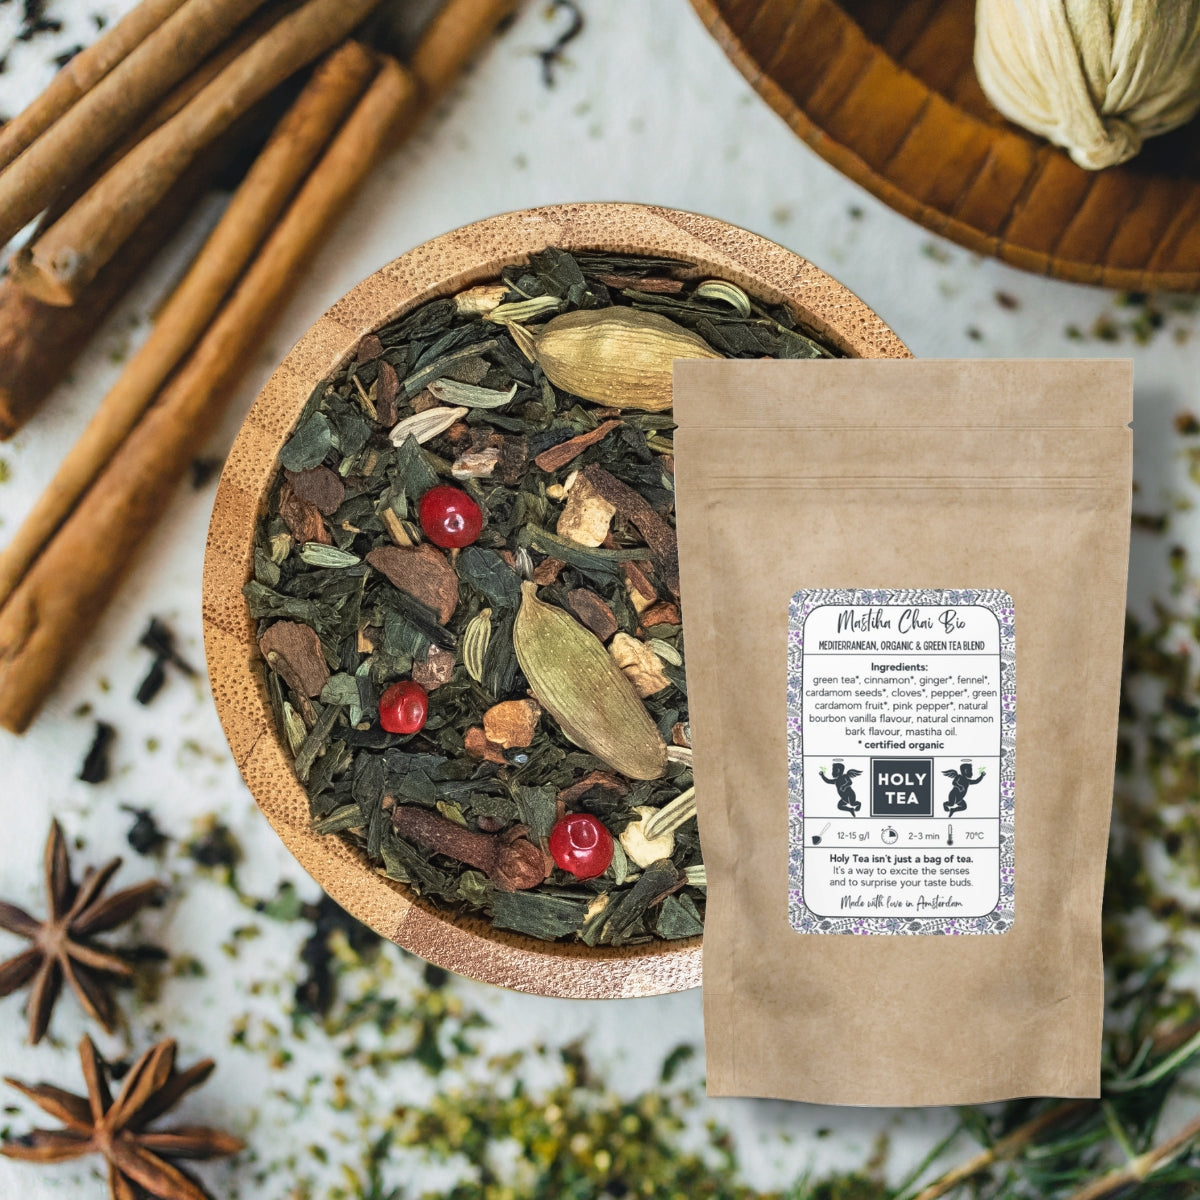 Mediterranean, Organic & Green Tea Blend - Mastiha Chai Bio - Holy Tea Amsterdam - 100G